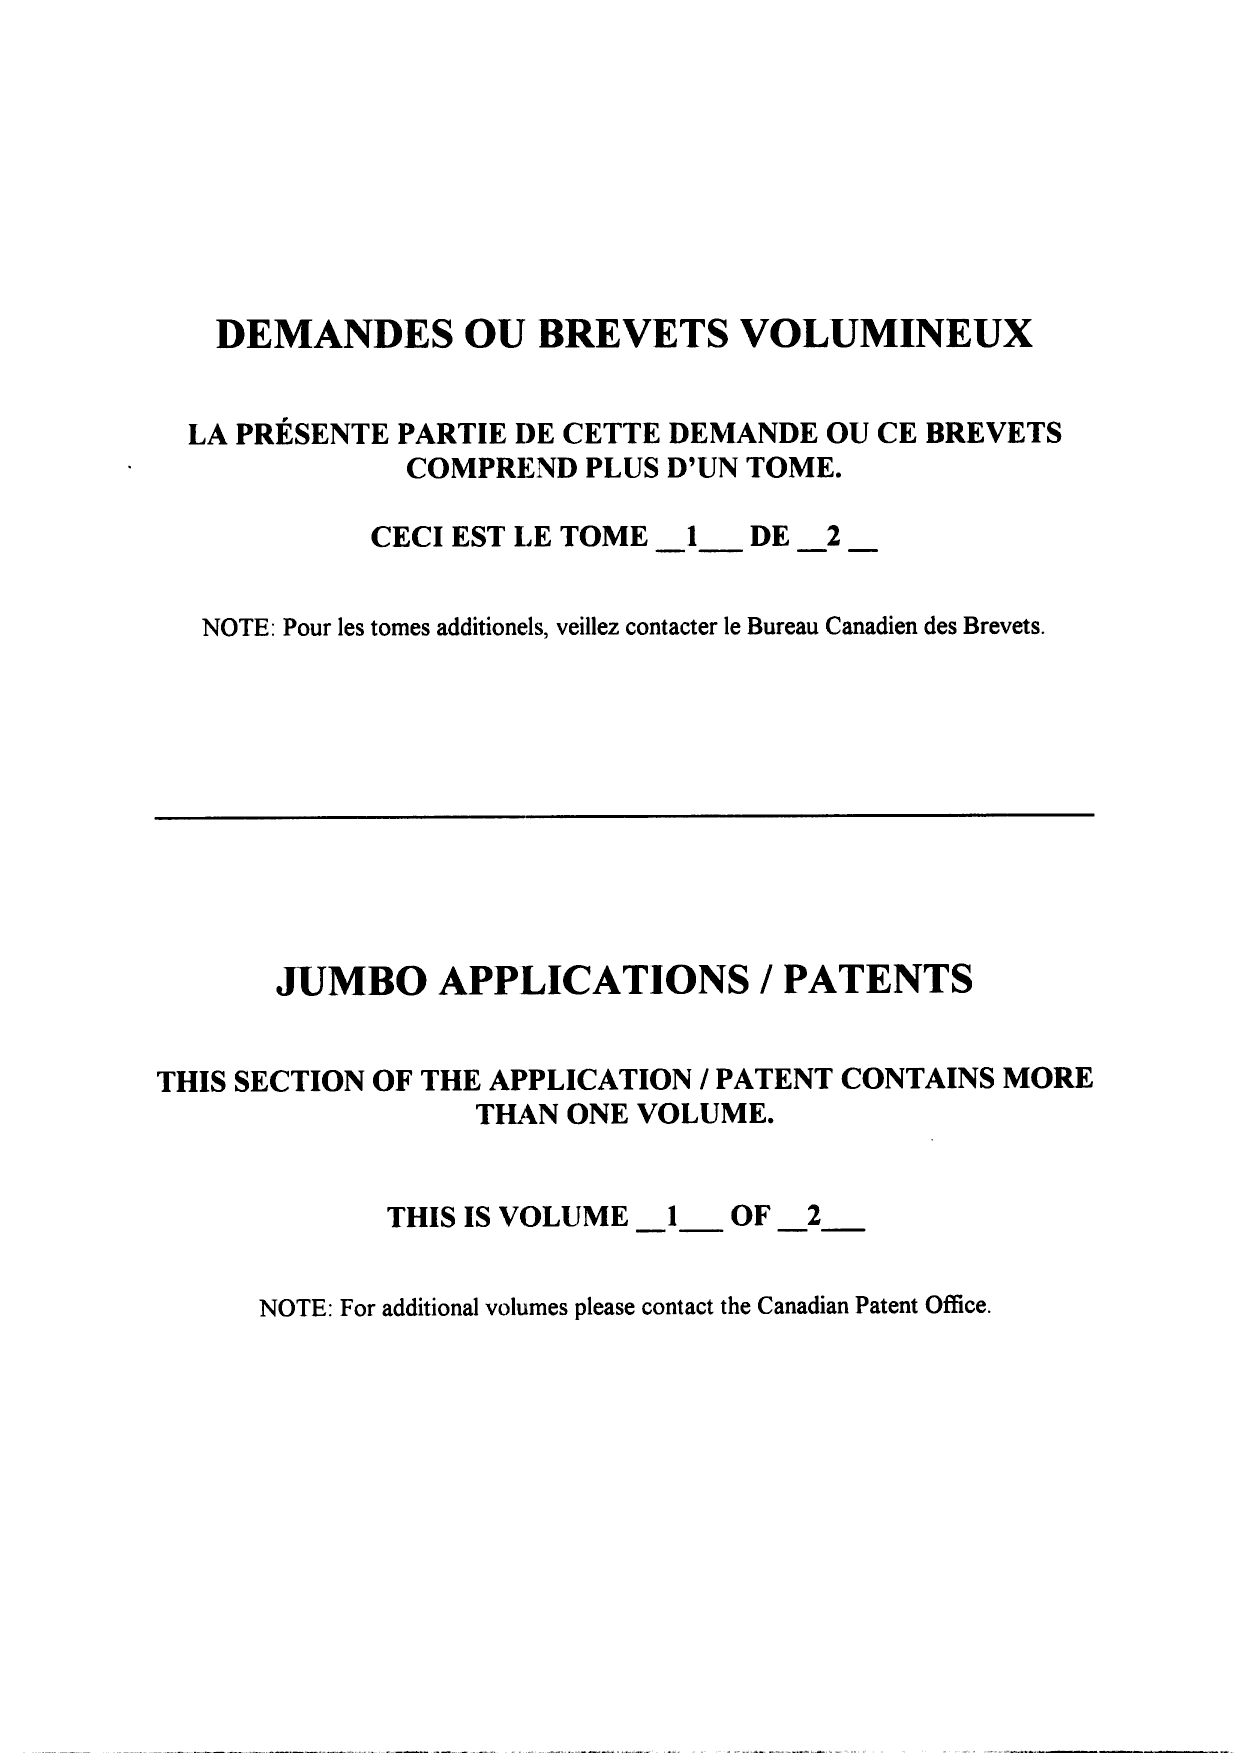 Canadian Patent Document 2542564. Description 20060414. Image 1 of 159